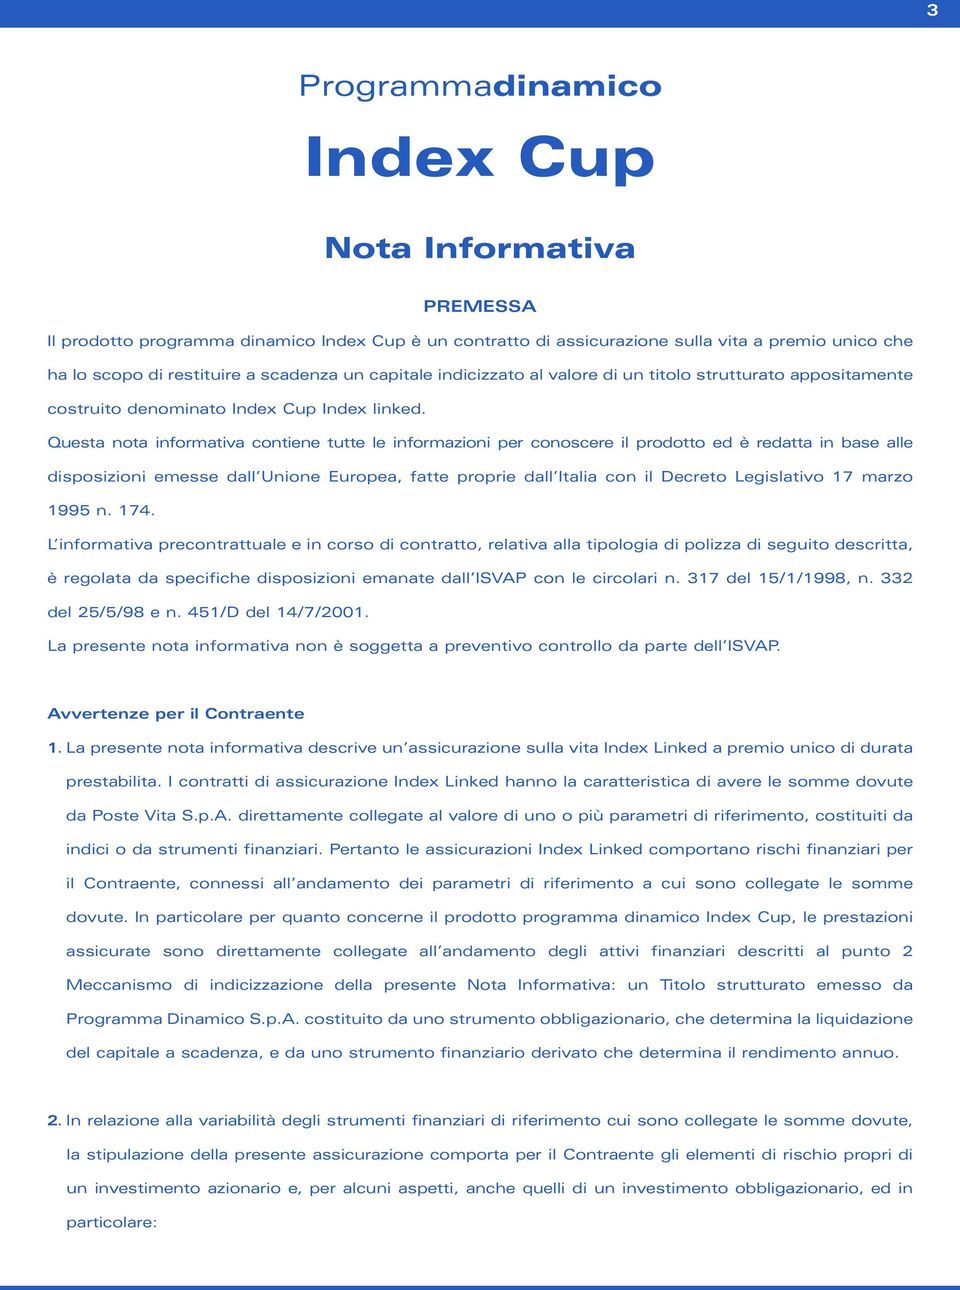 Questa nota informativa contiene tutte le informazioni per conoscere il prodotto ed è redatta in base alle disposizioni emesse dall Unione Europea, fatte proprie dall Italia con il Decreto